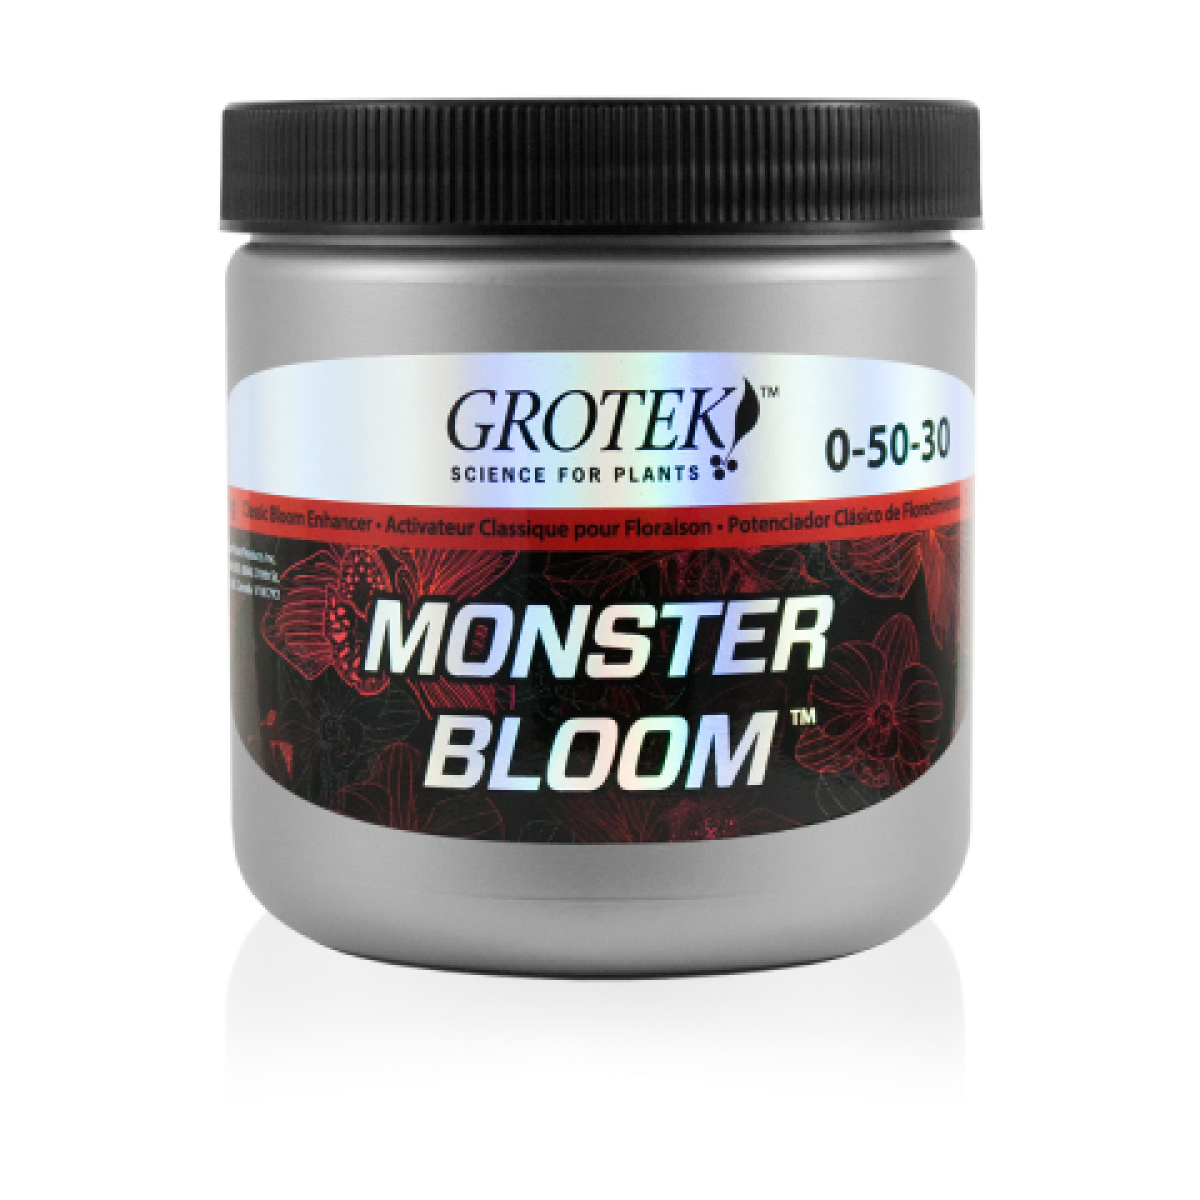 Grotek monster bloom 500g